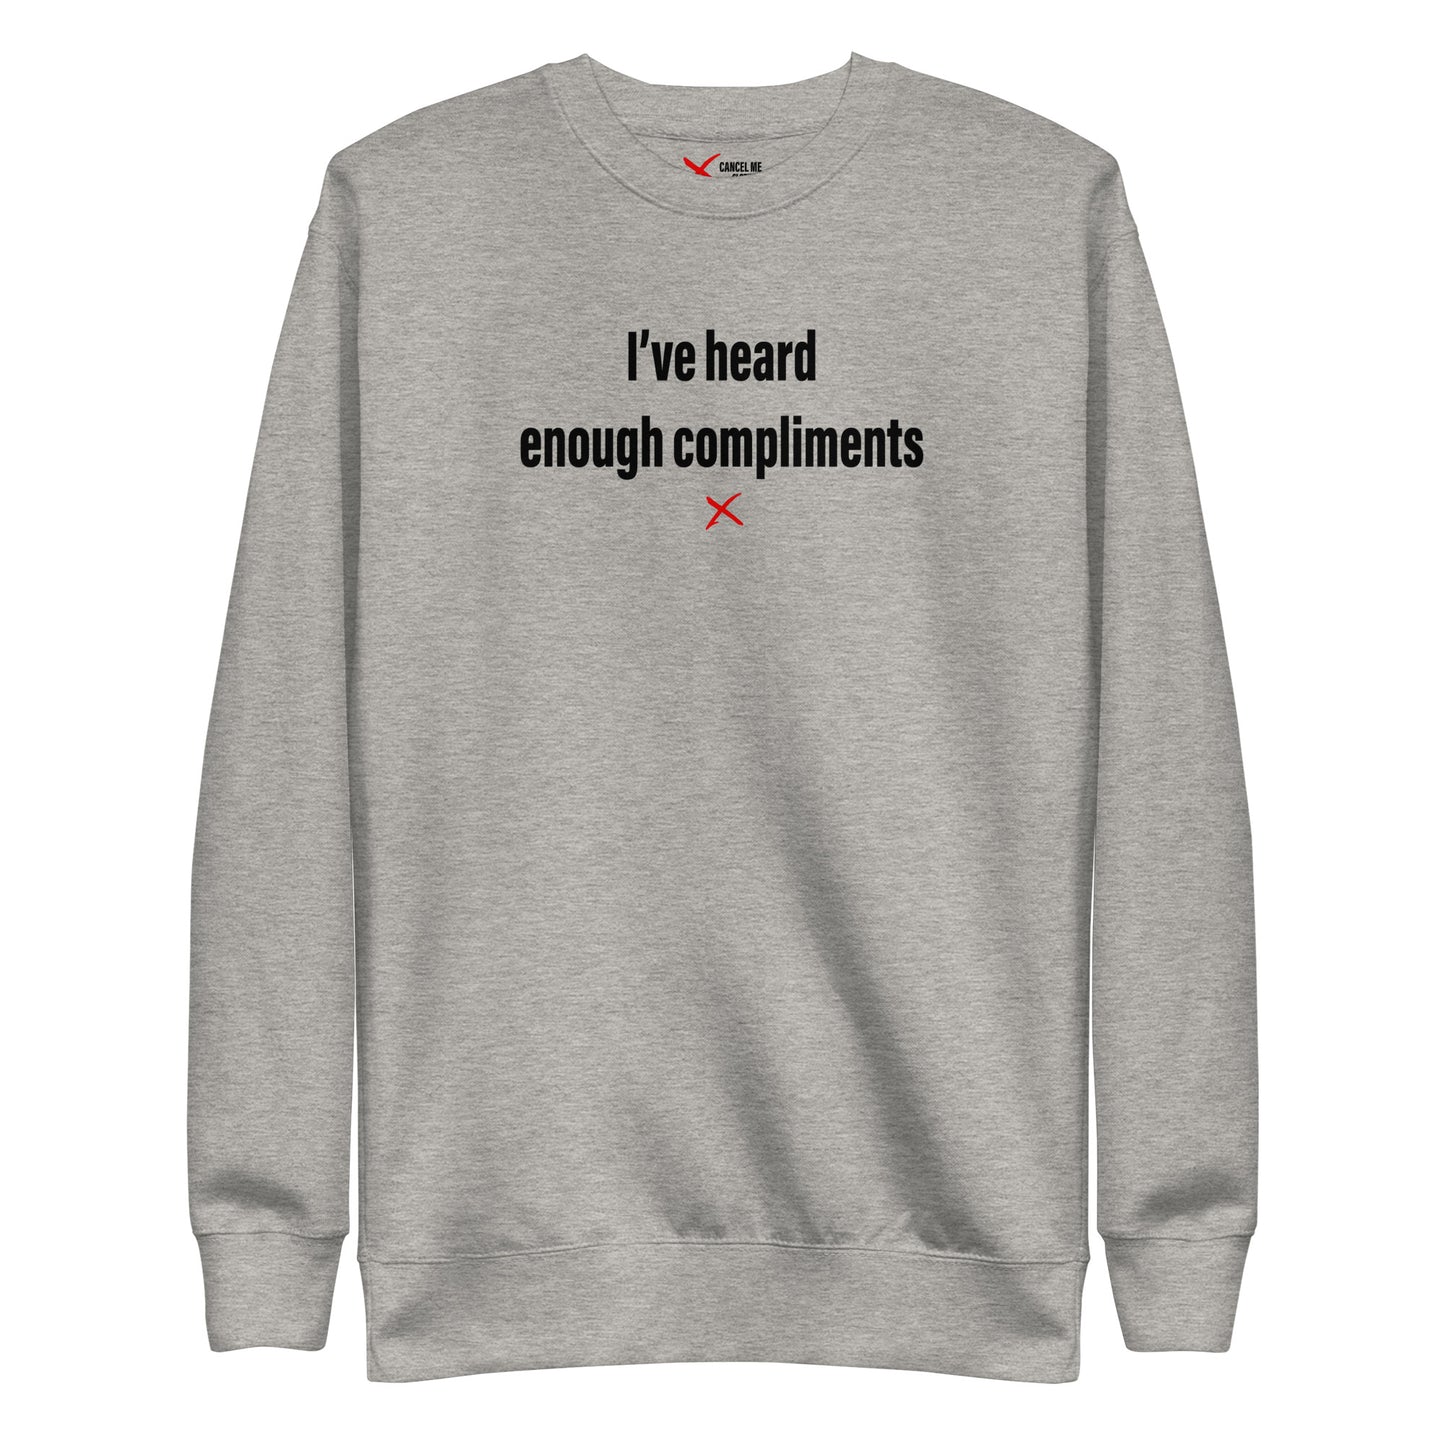 I've heard enough compliments - Sweatshirt